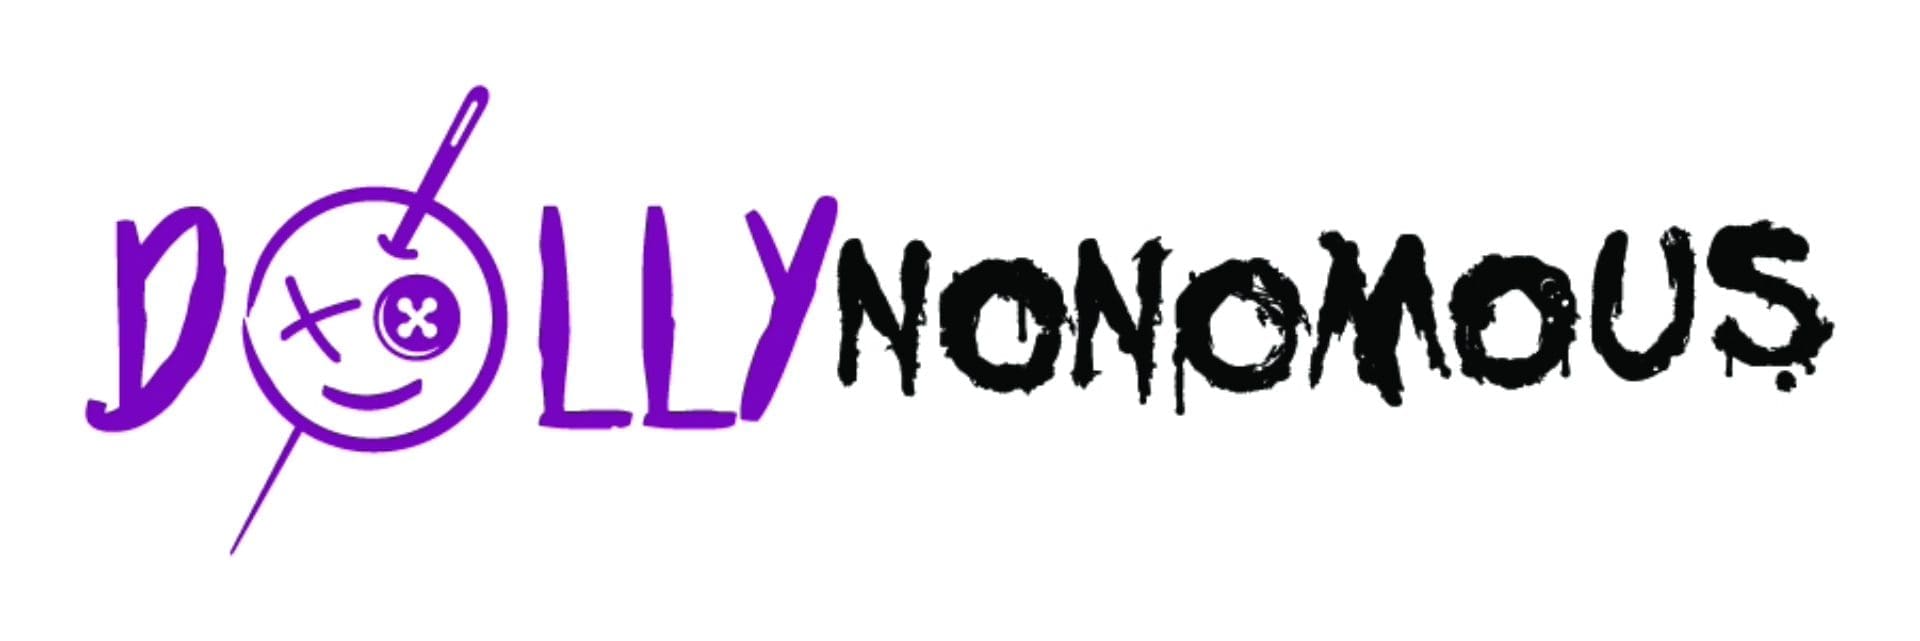 Dollynonomous Logo Design Logo